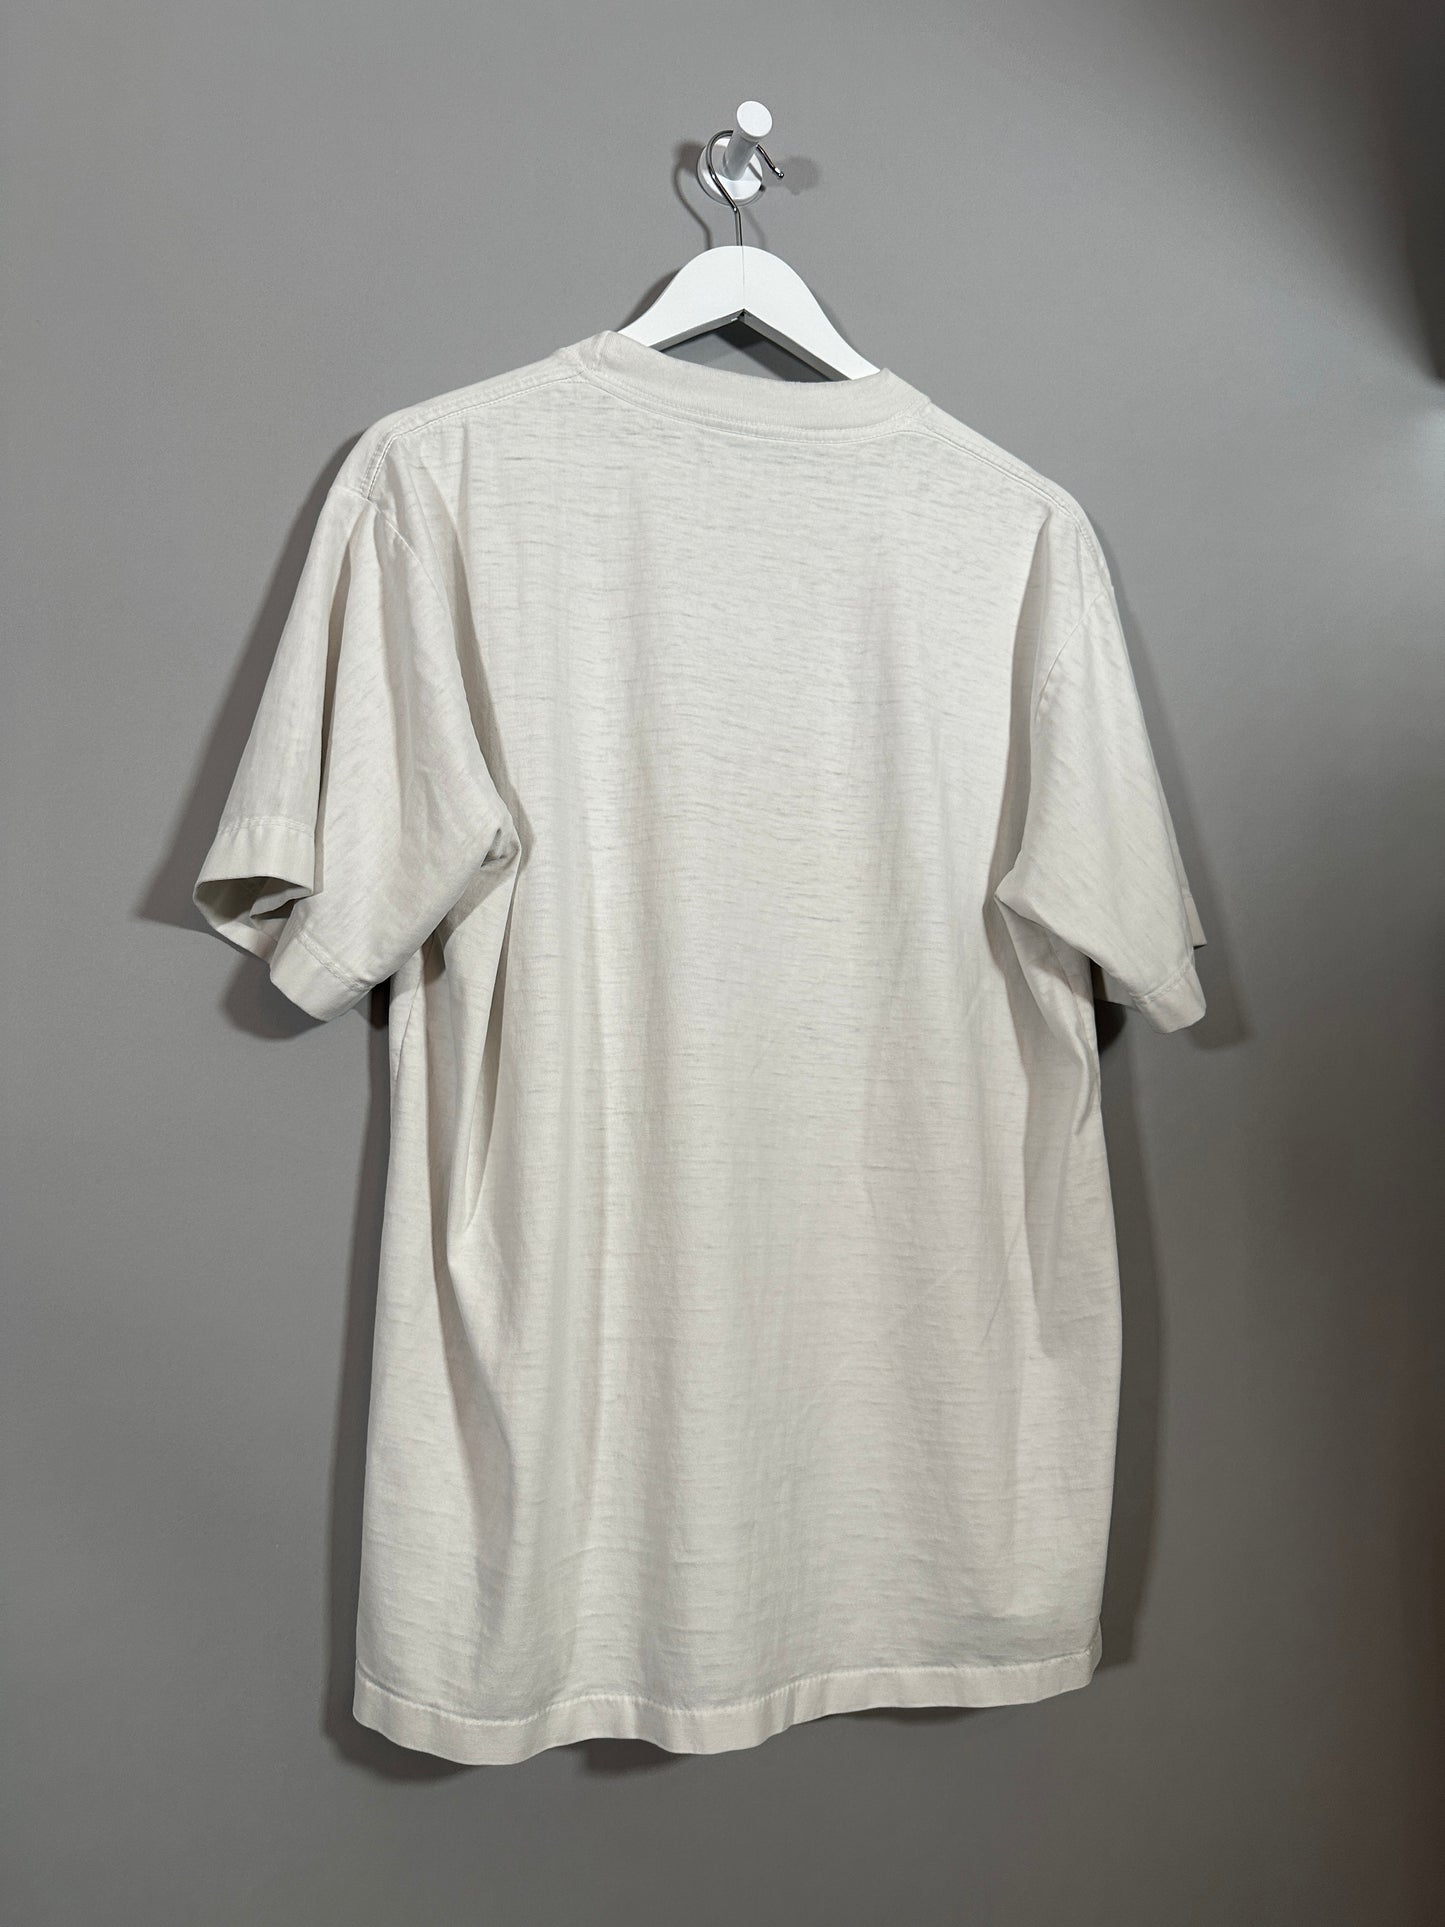 90s Souvenir T Shirt - L